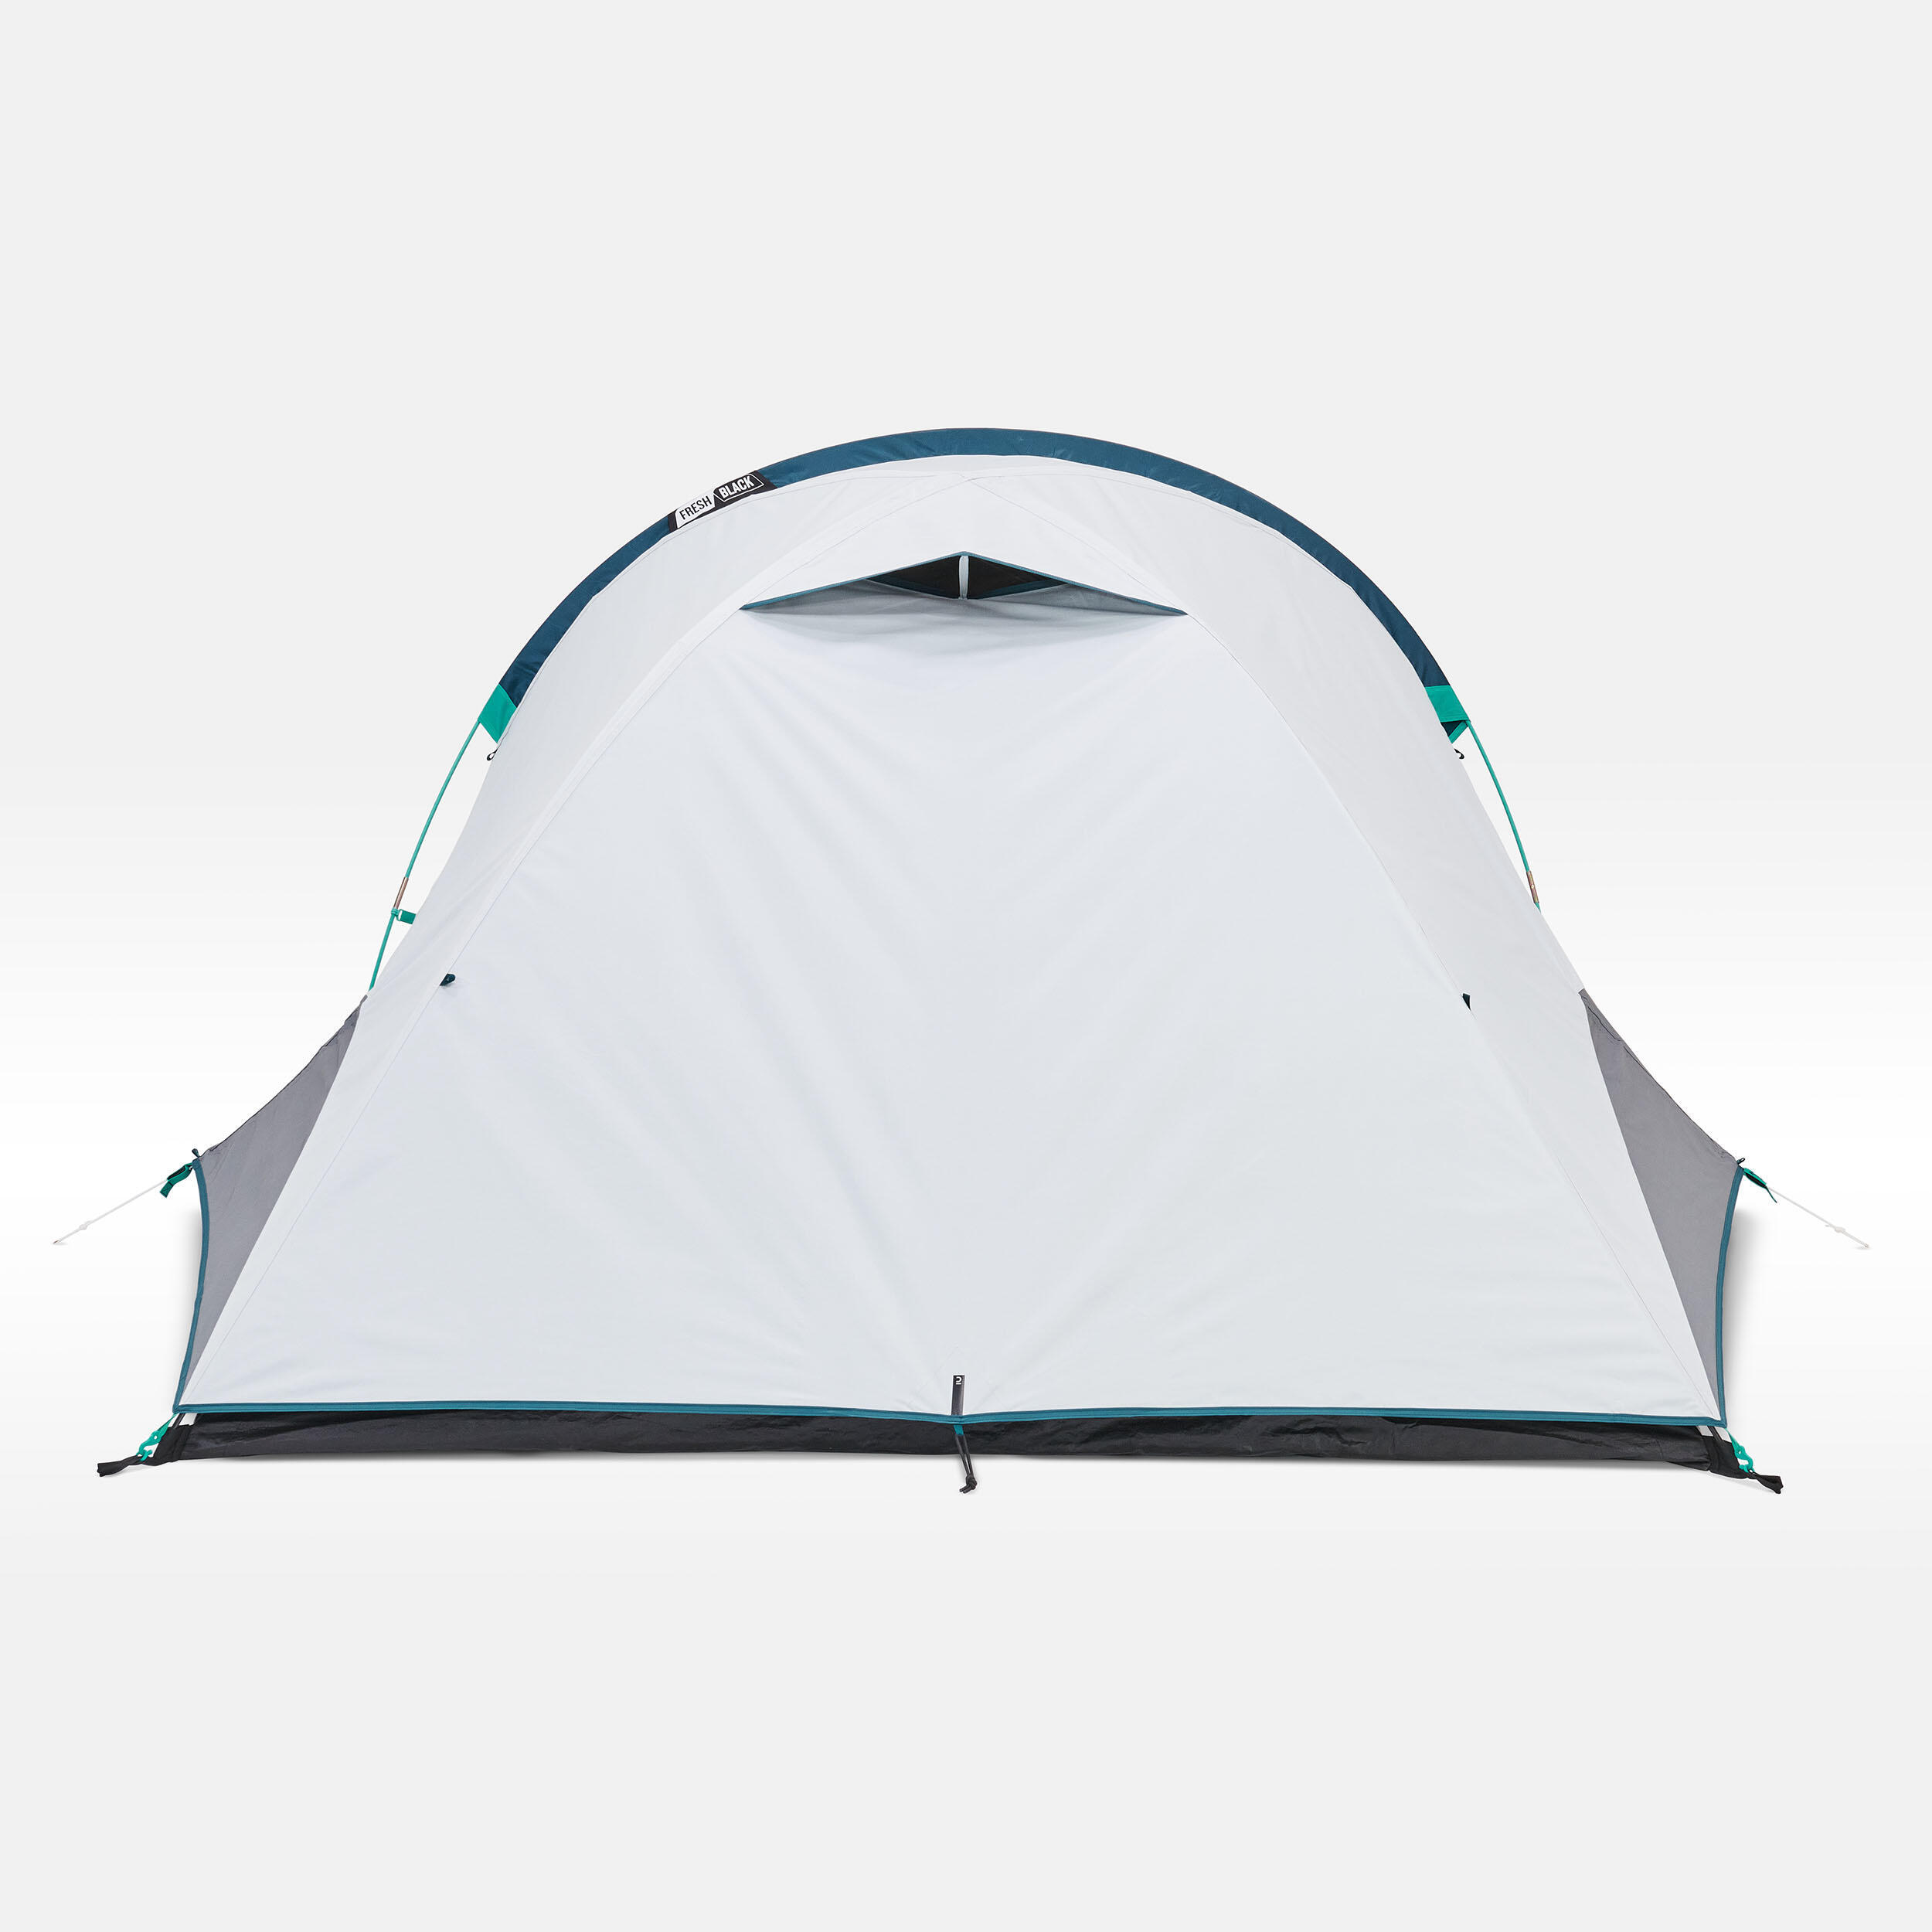 Camping tent MH100 XL - 3-P - Fresh&Black 7/24